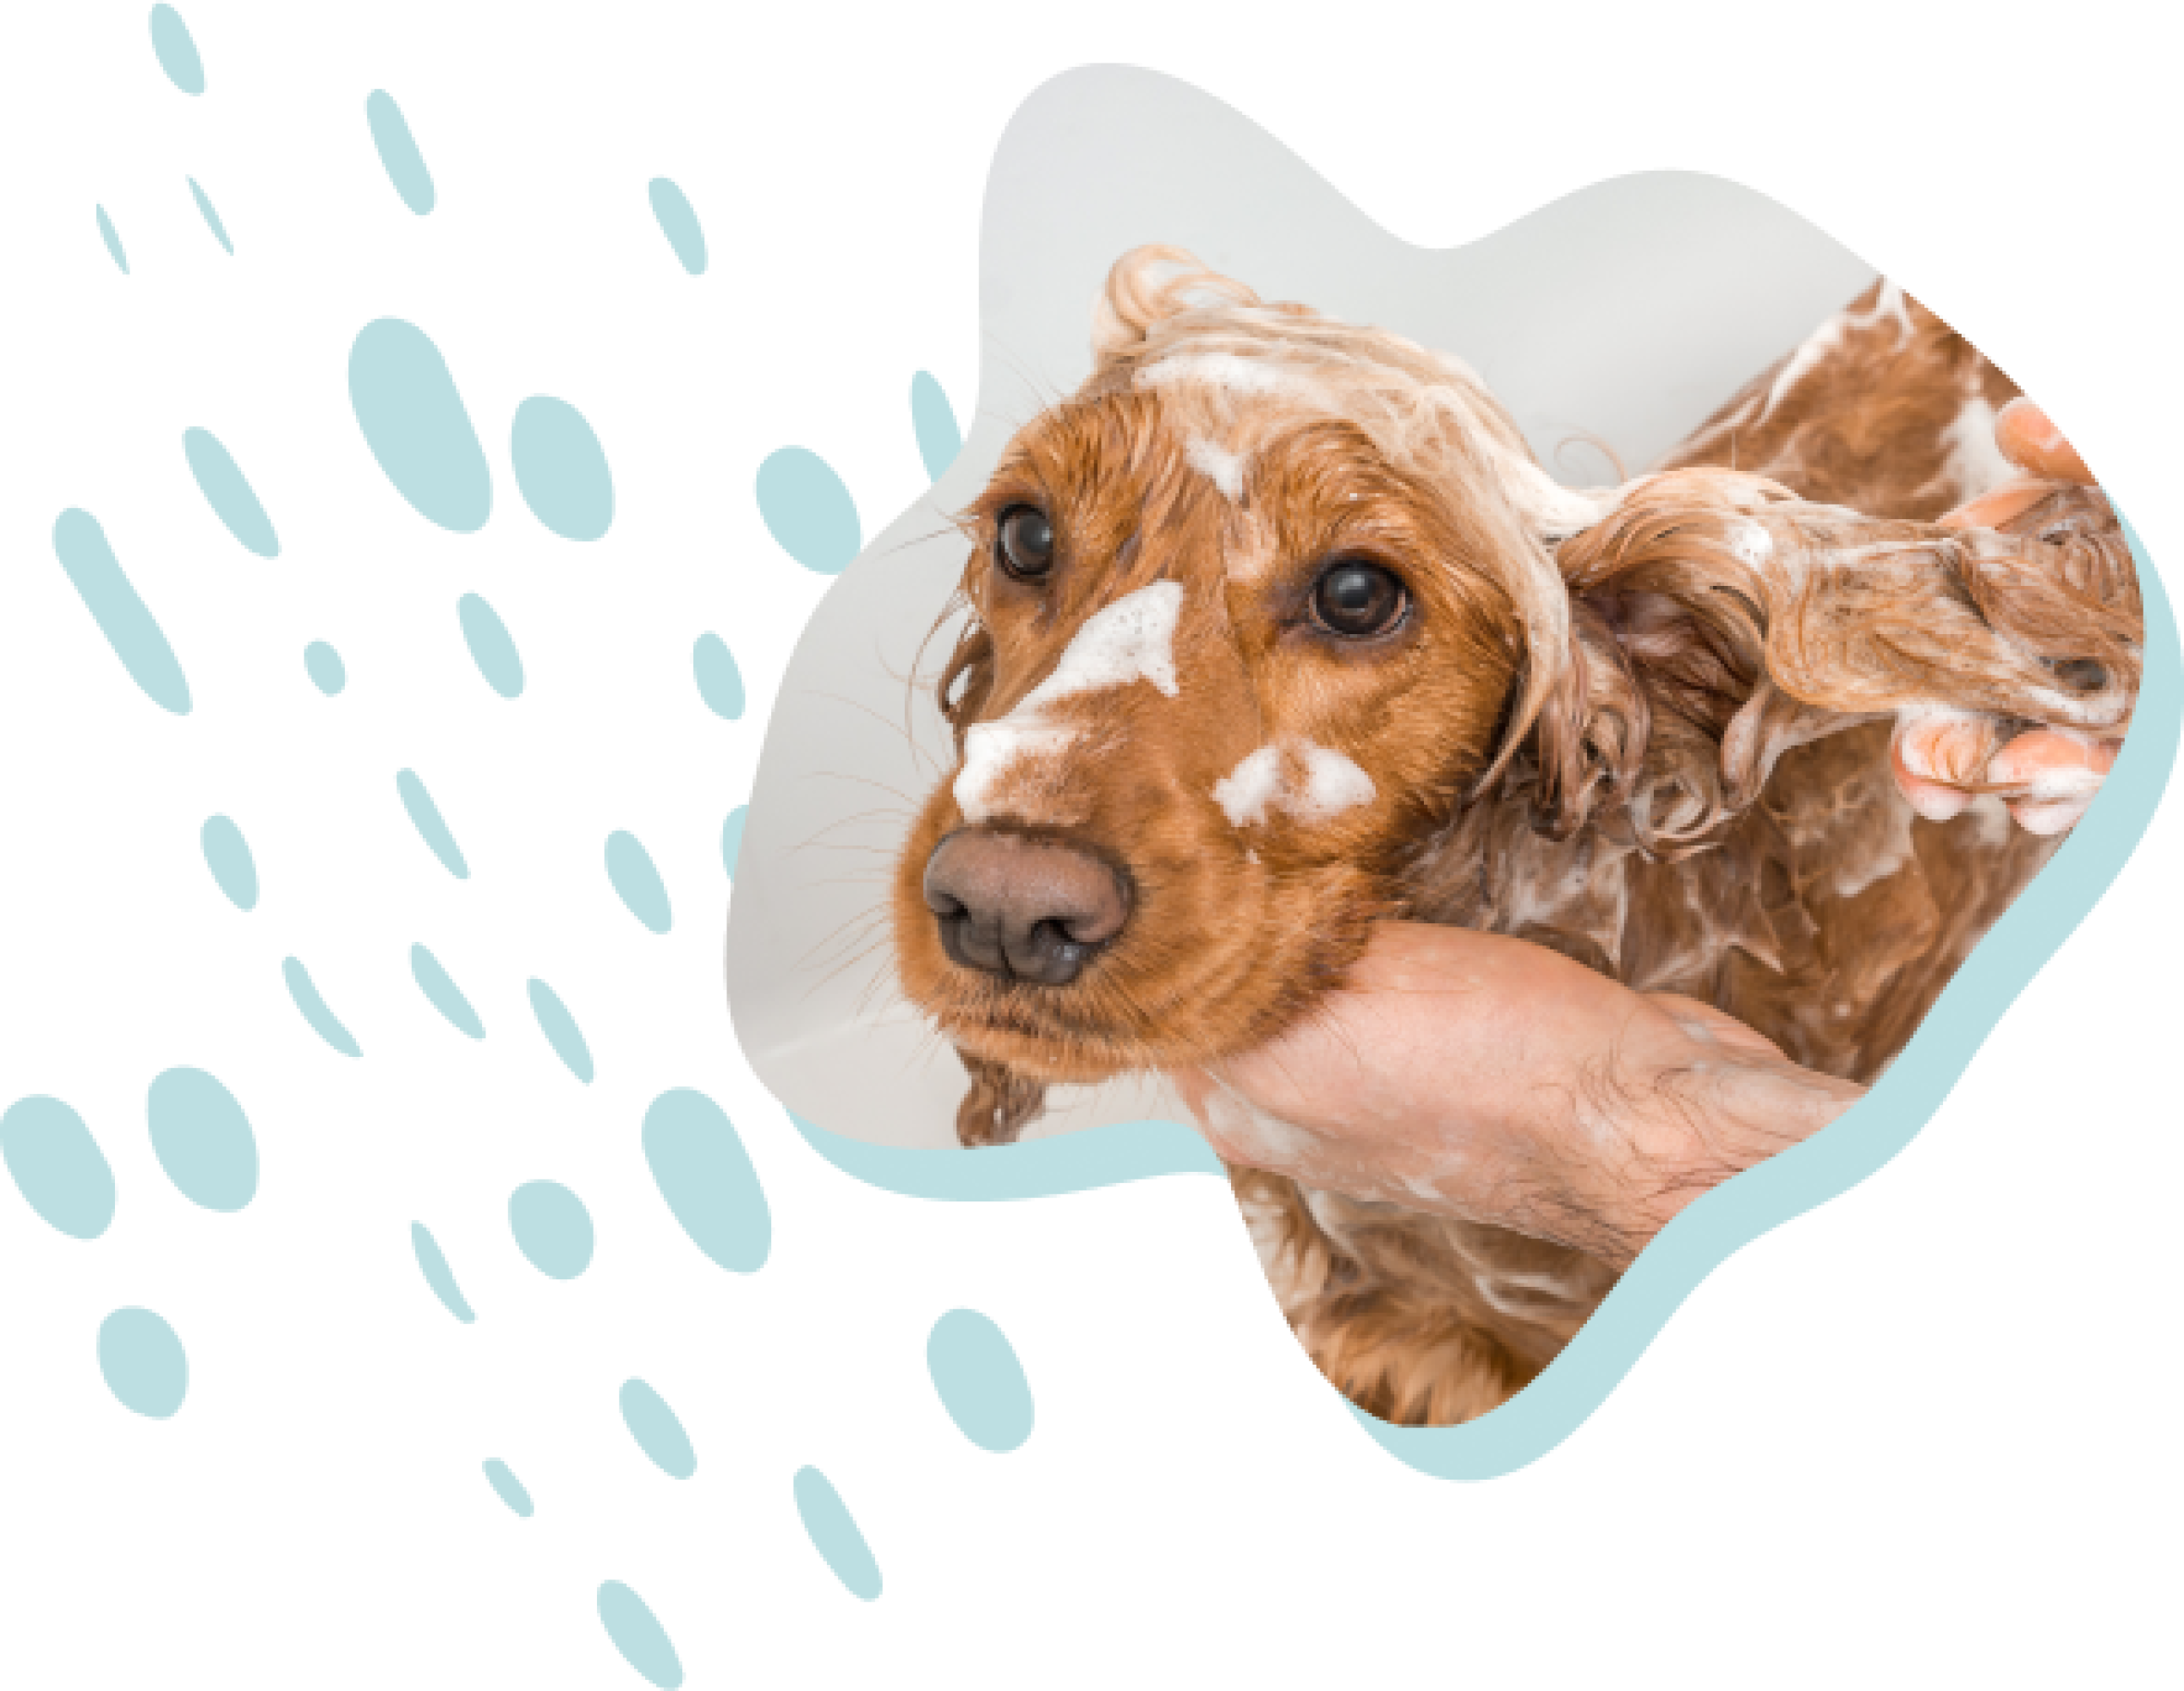 Bruine hond met schuim in de vacht die door een persoon wordt gewassen met shampoo.